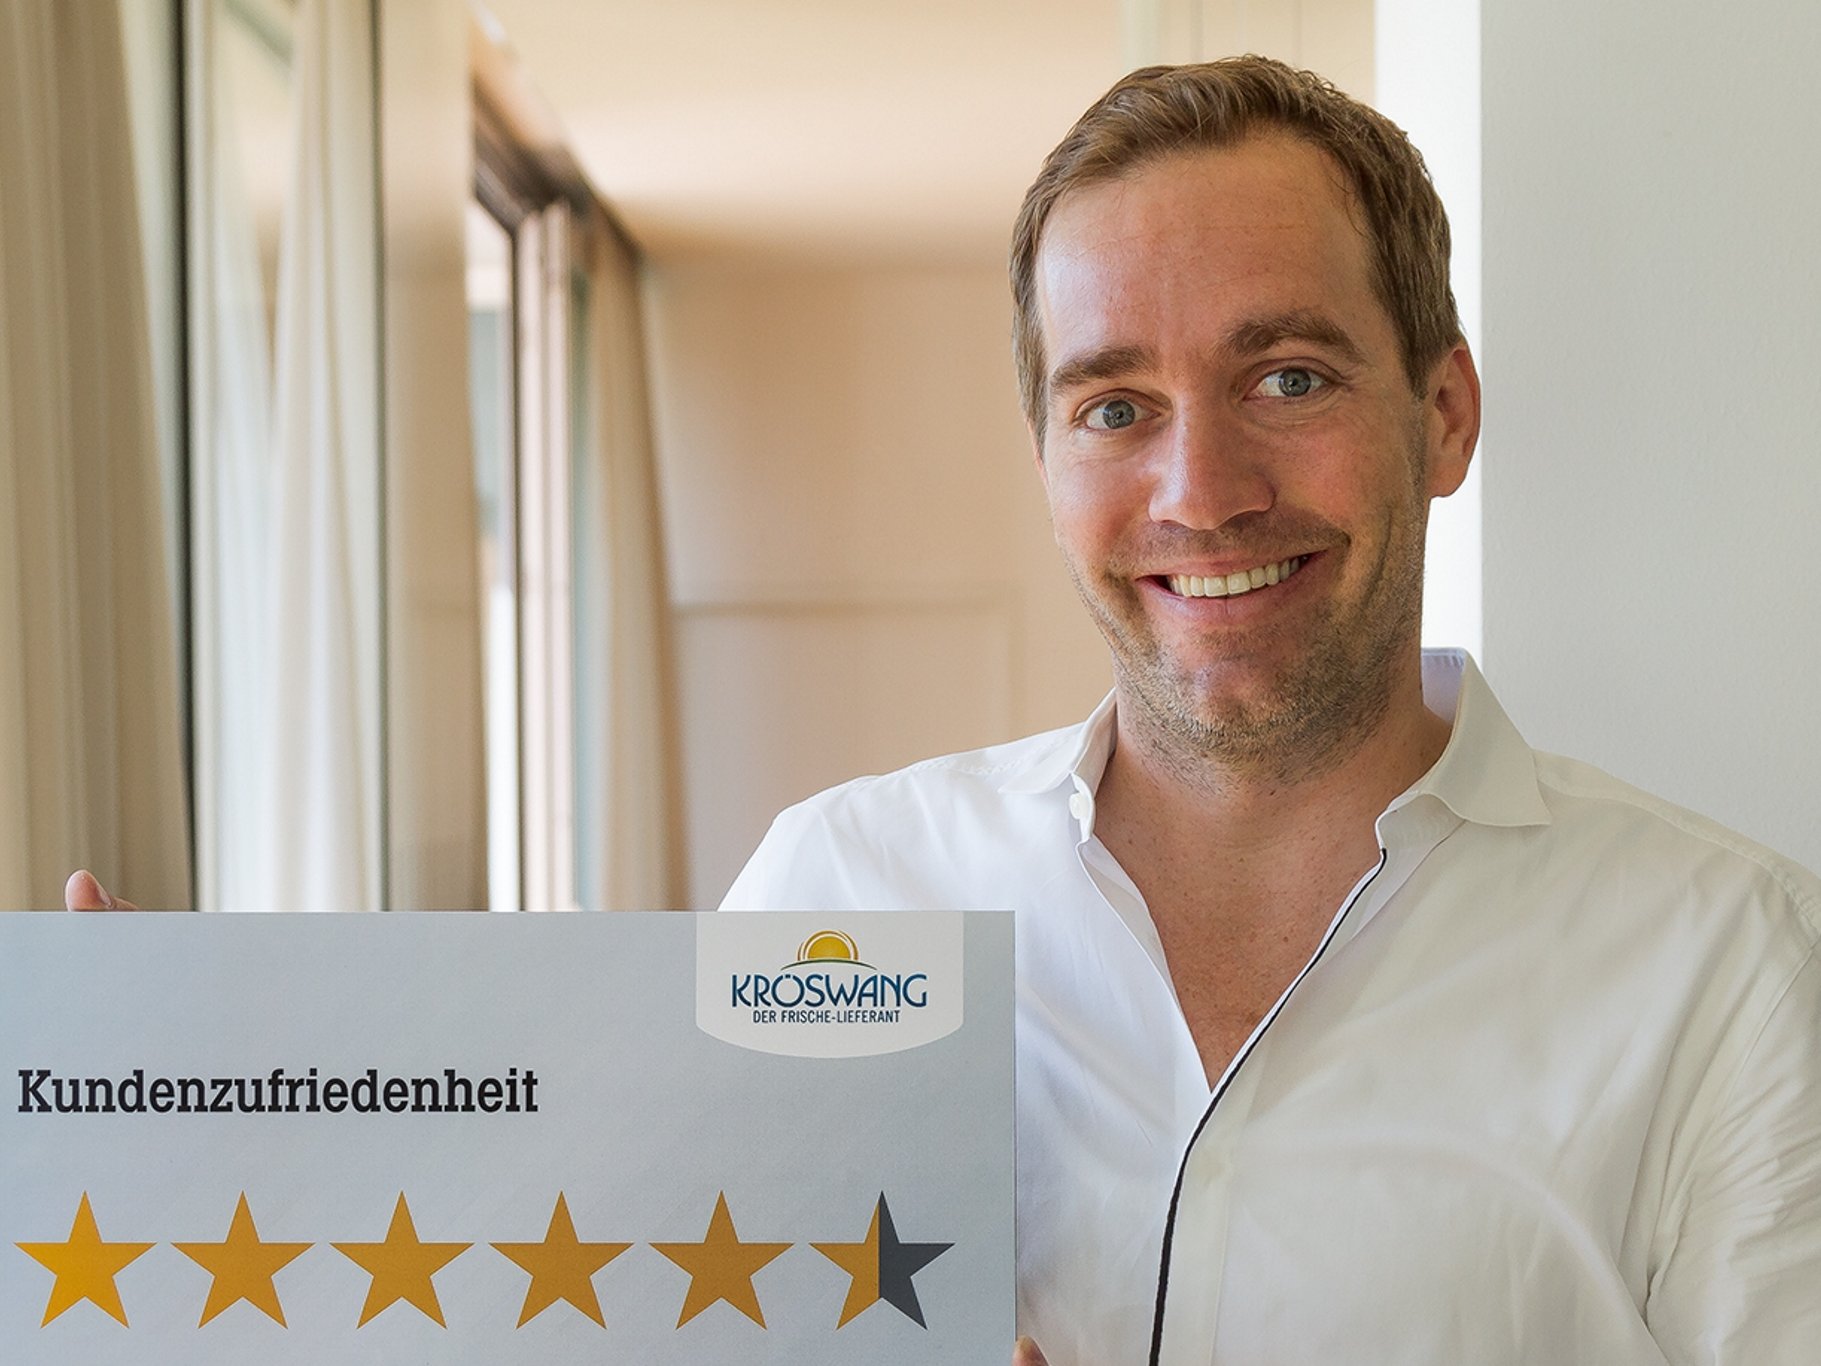 Geschäftsführer Manfred Kröswang freut sich über die positive Bewertung durch seine Kunden.